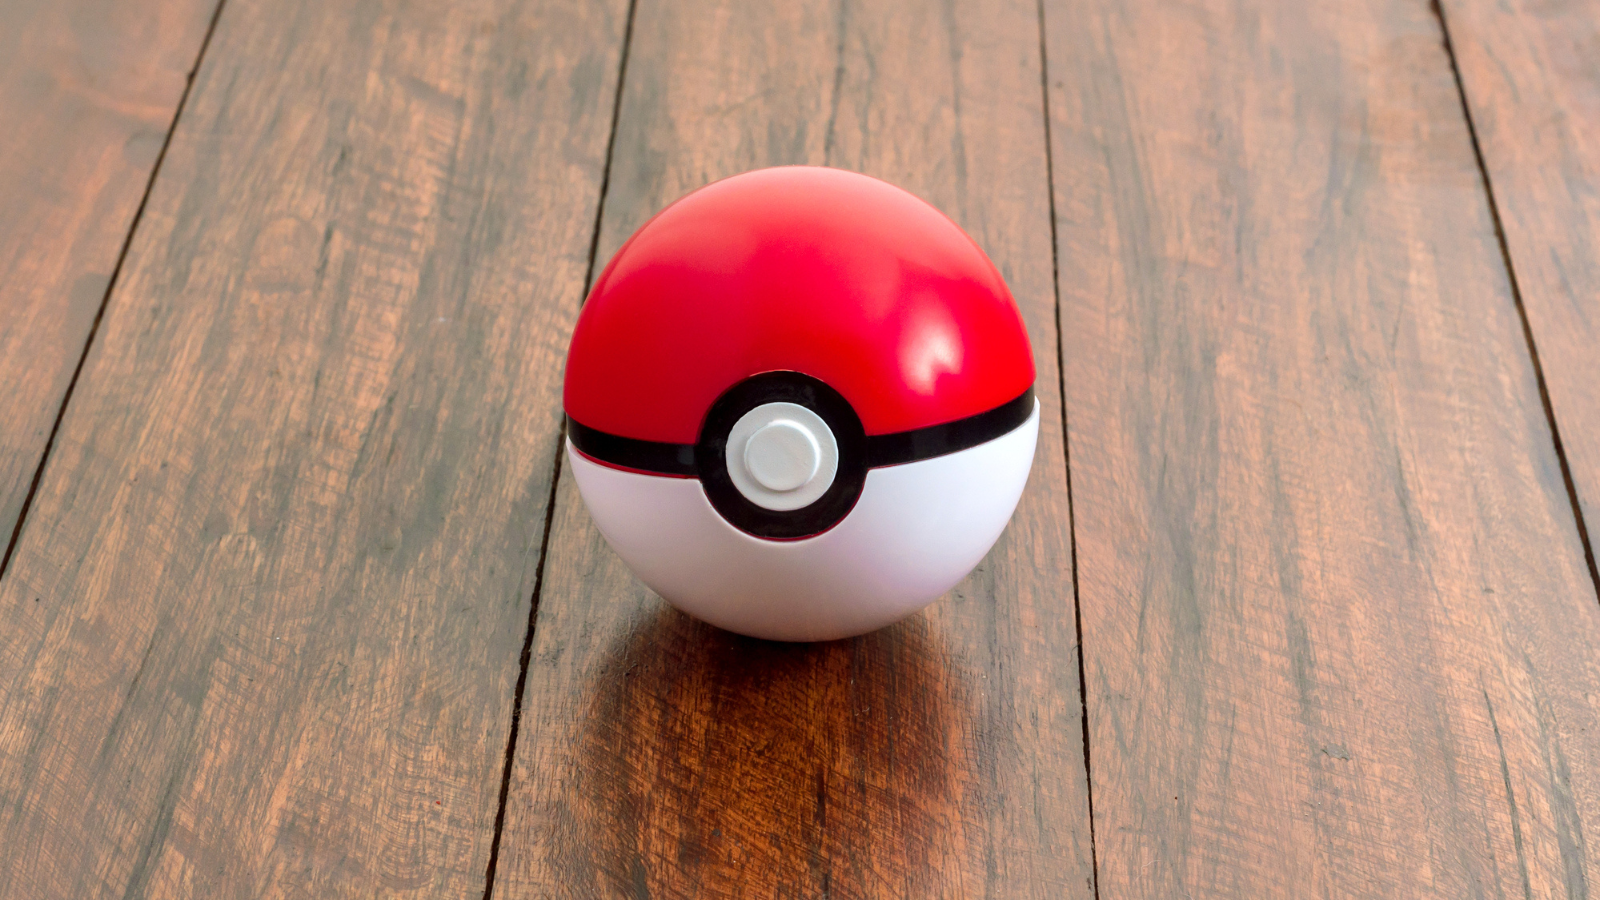 pokemon ball on wooden table